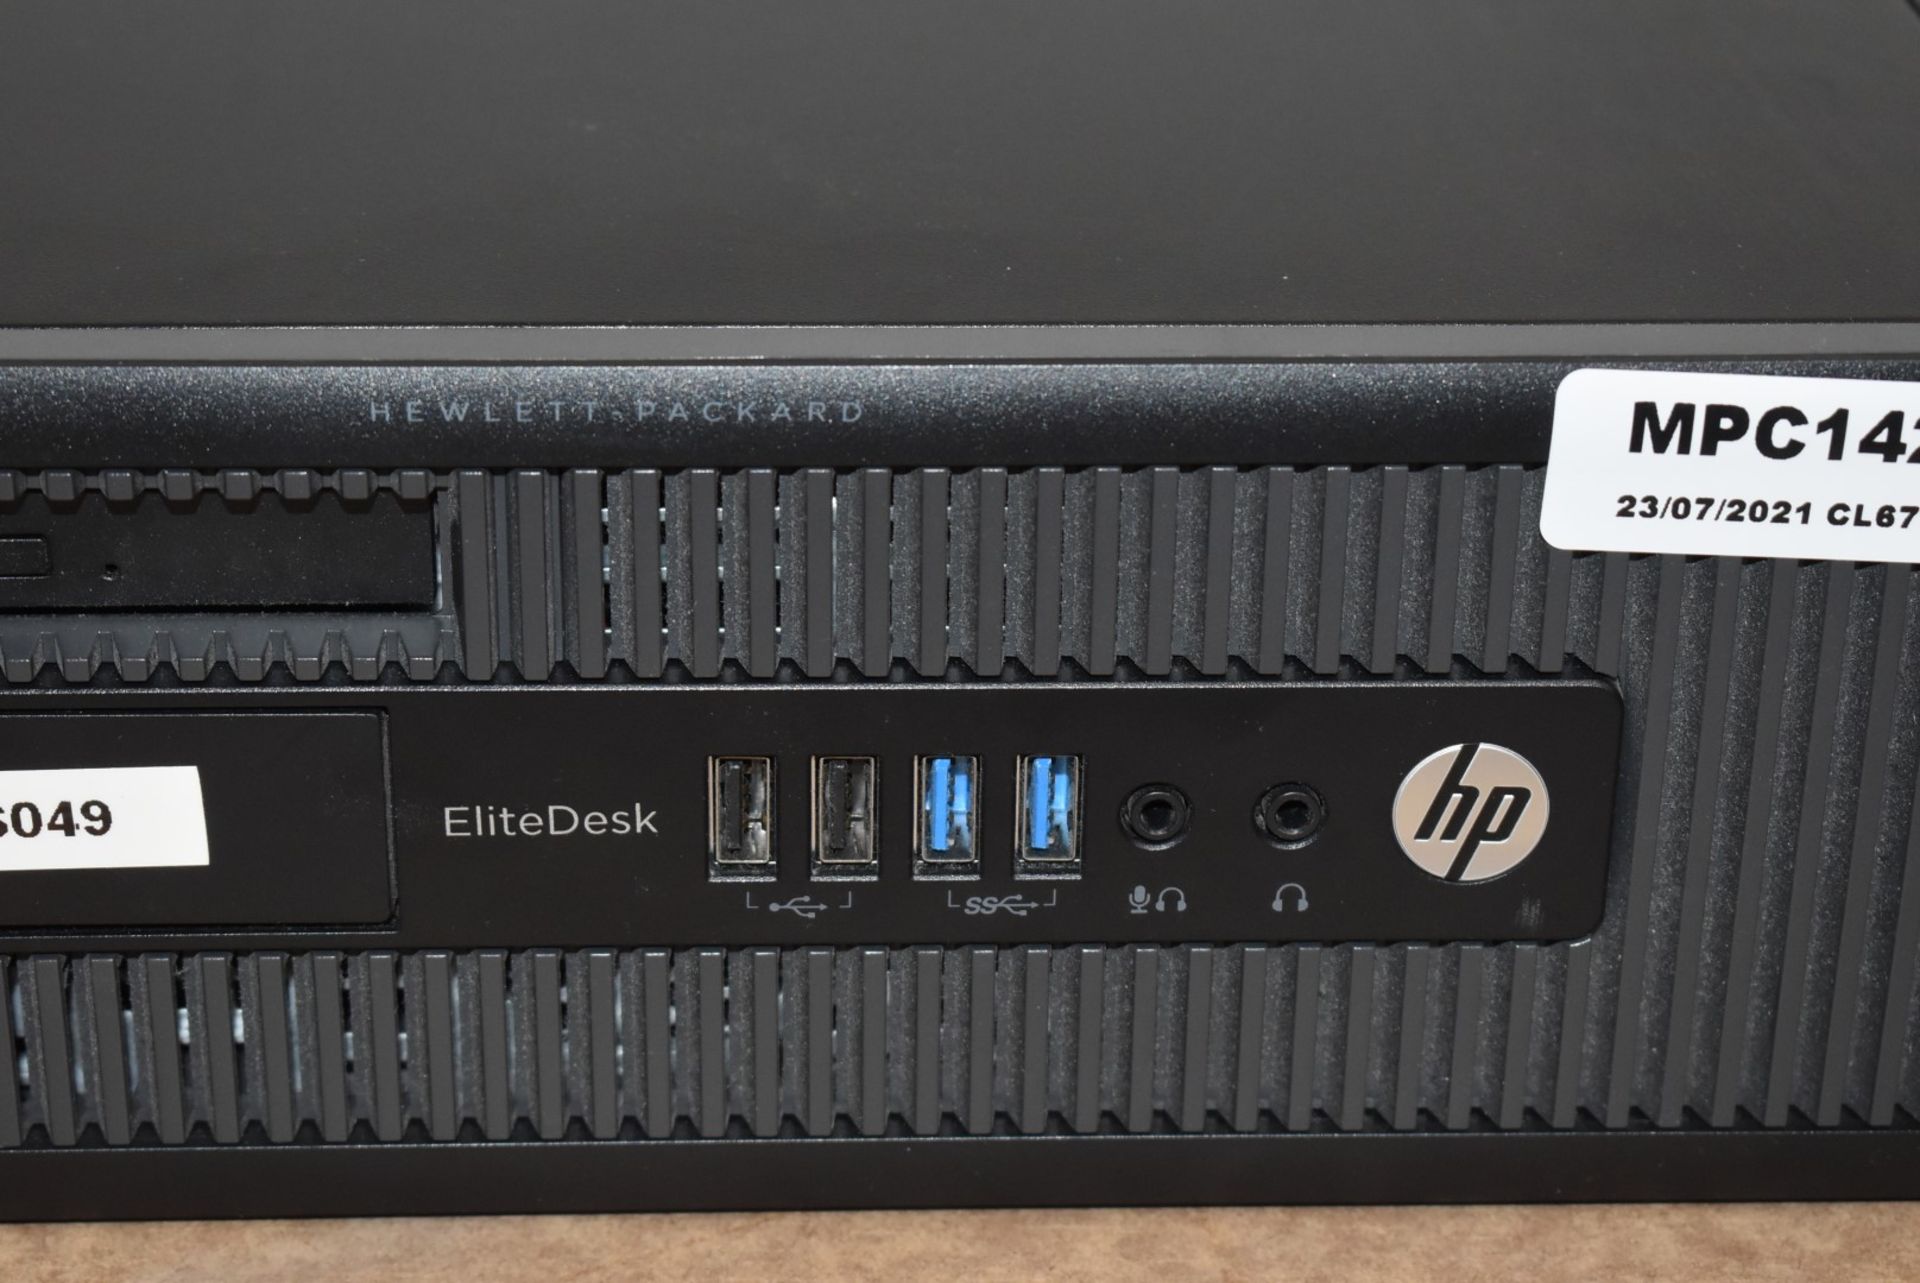 1 x HP Elite Desk 800 G1 SFF Desktop PC - Features an Intel i7-4770 3.4Ghz Quad Core Processor, - Image 3 of 5